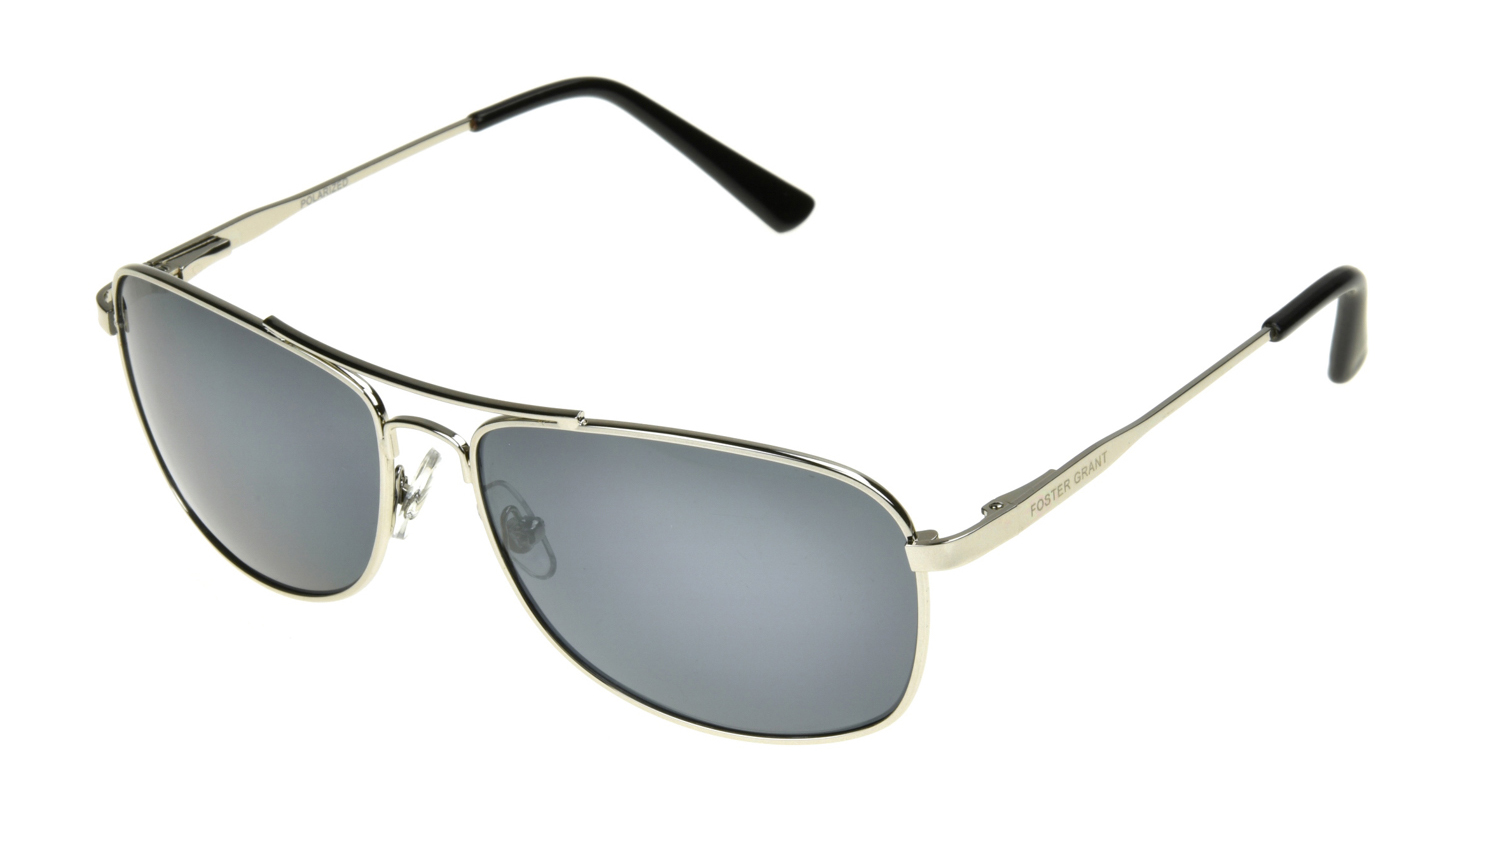 Foster Grant Men's Square Fashion Sunglasses Silver - image 2 of 7